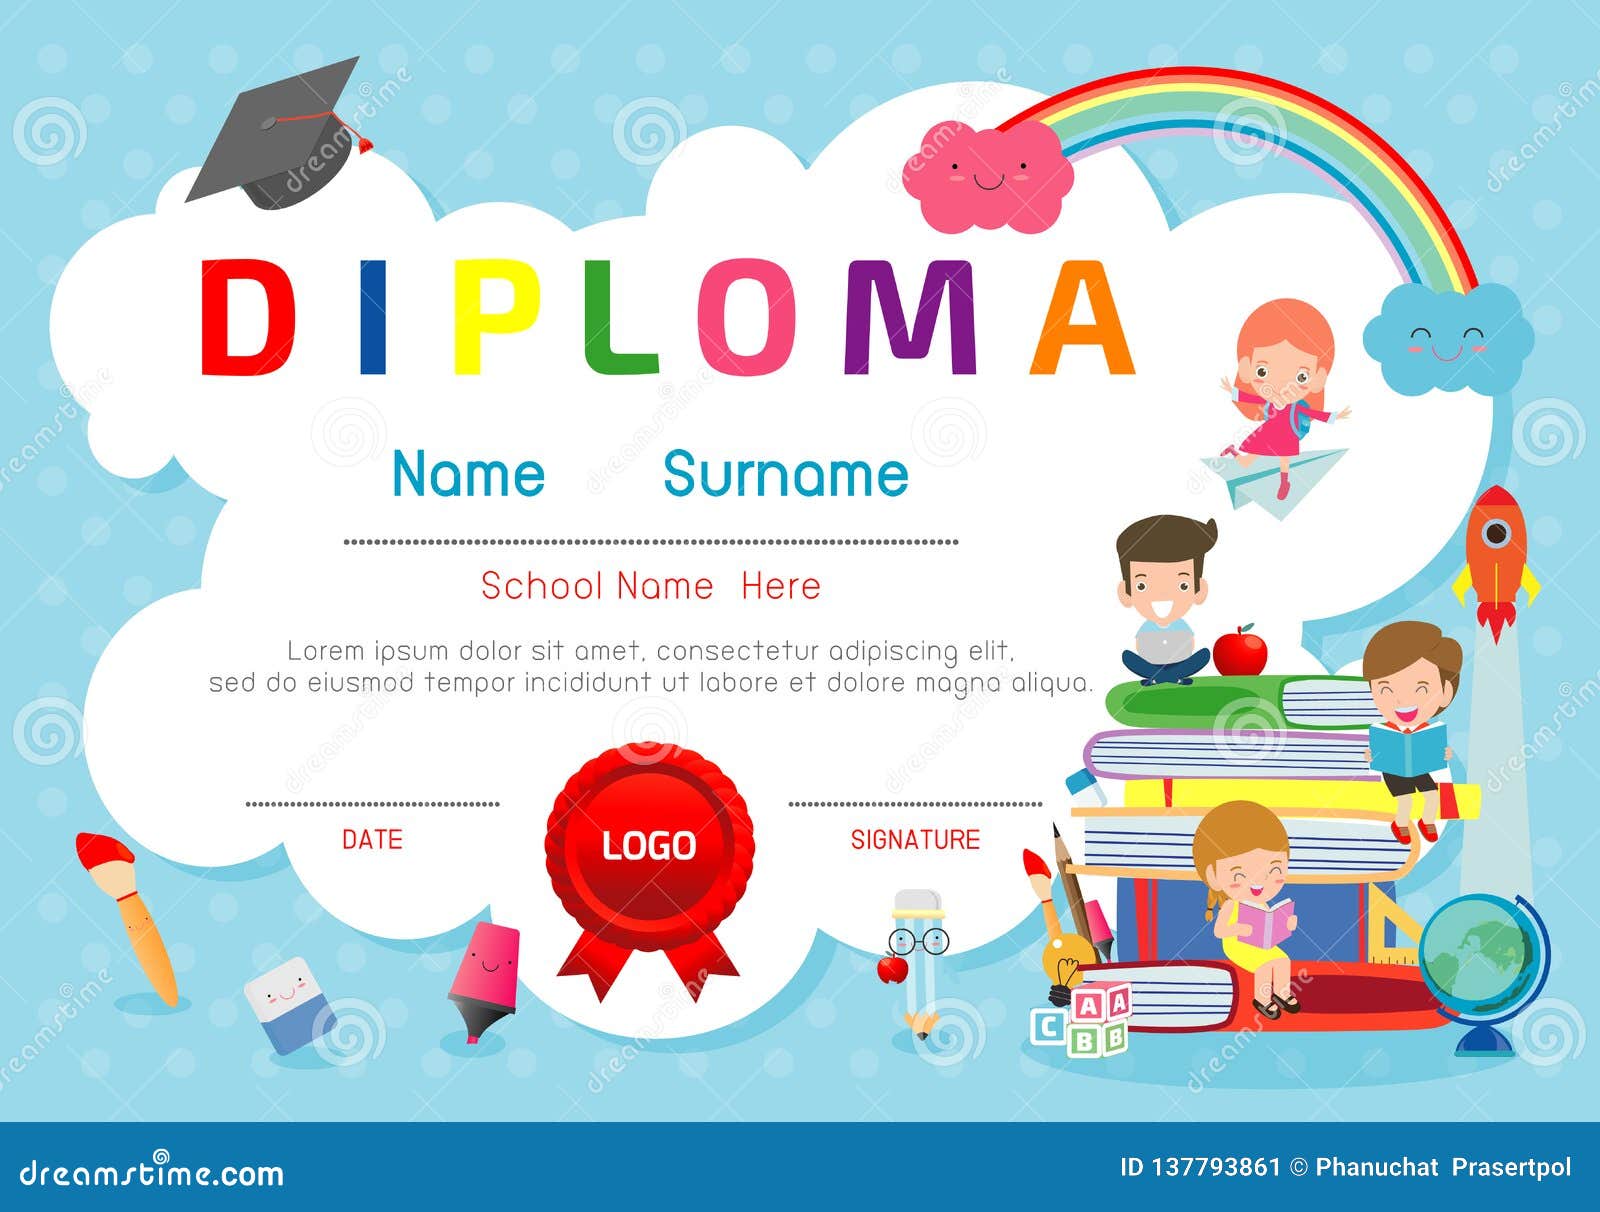 Certificates Kindergarten And Elementary Preschool Kids Diploma